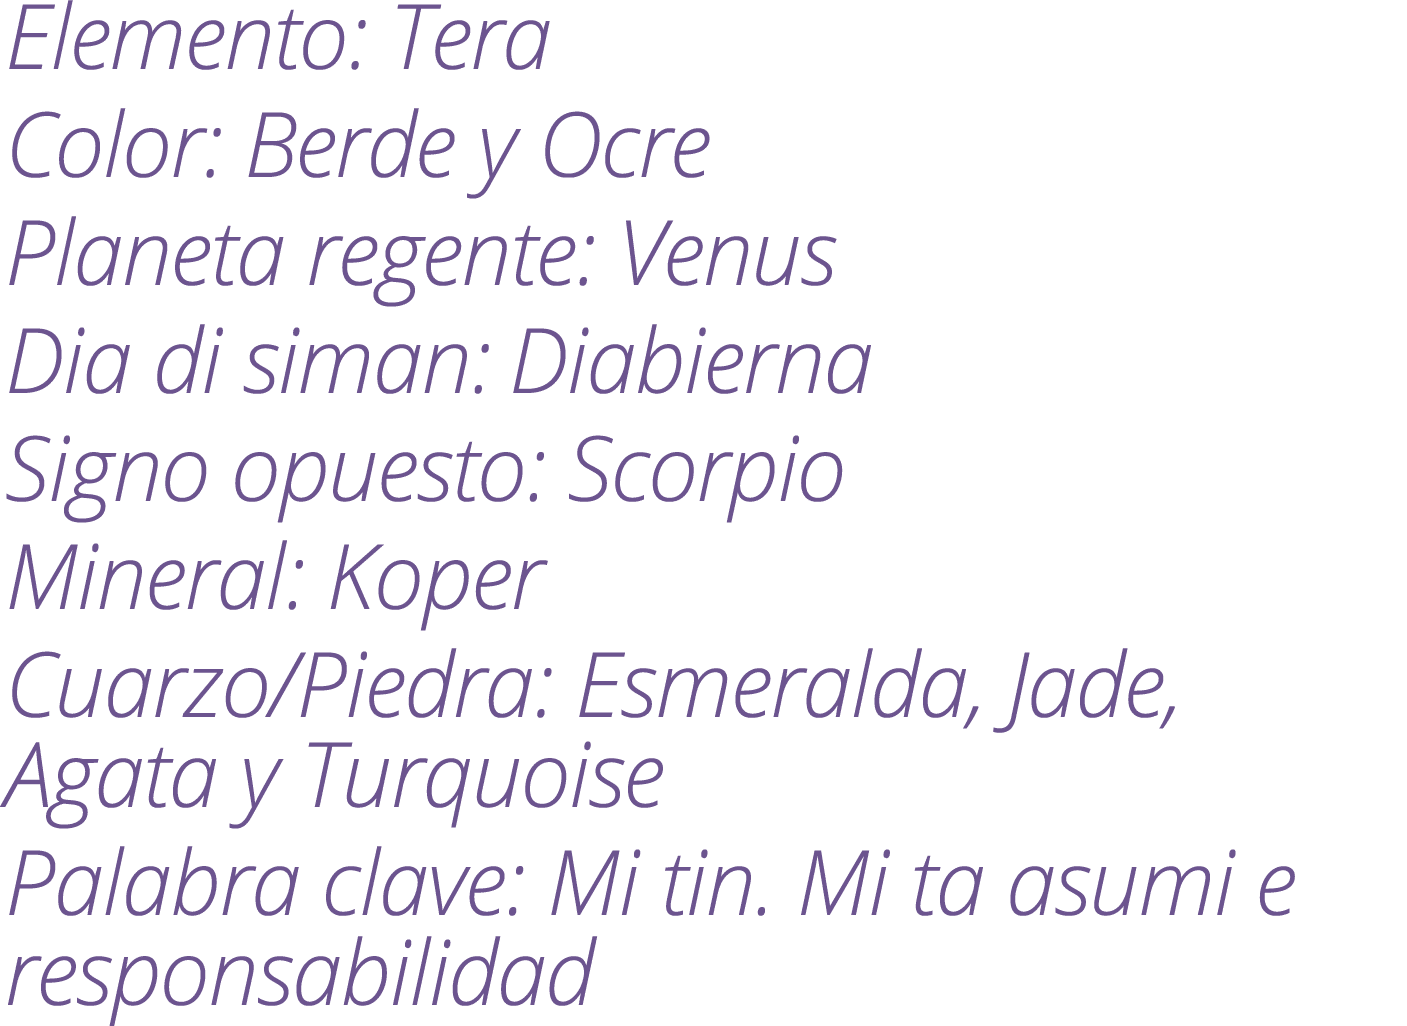 Elemento: Tera Color: Berde y Ocre Planeta regente: Venus Dia di siman: Diabierna Signo opuesto: Scorpio Mineral: Kop...